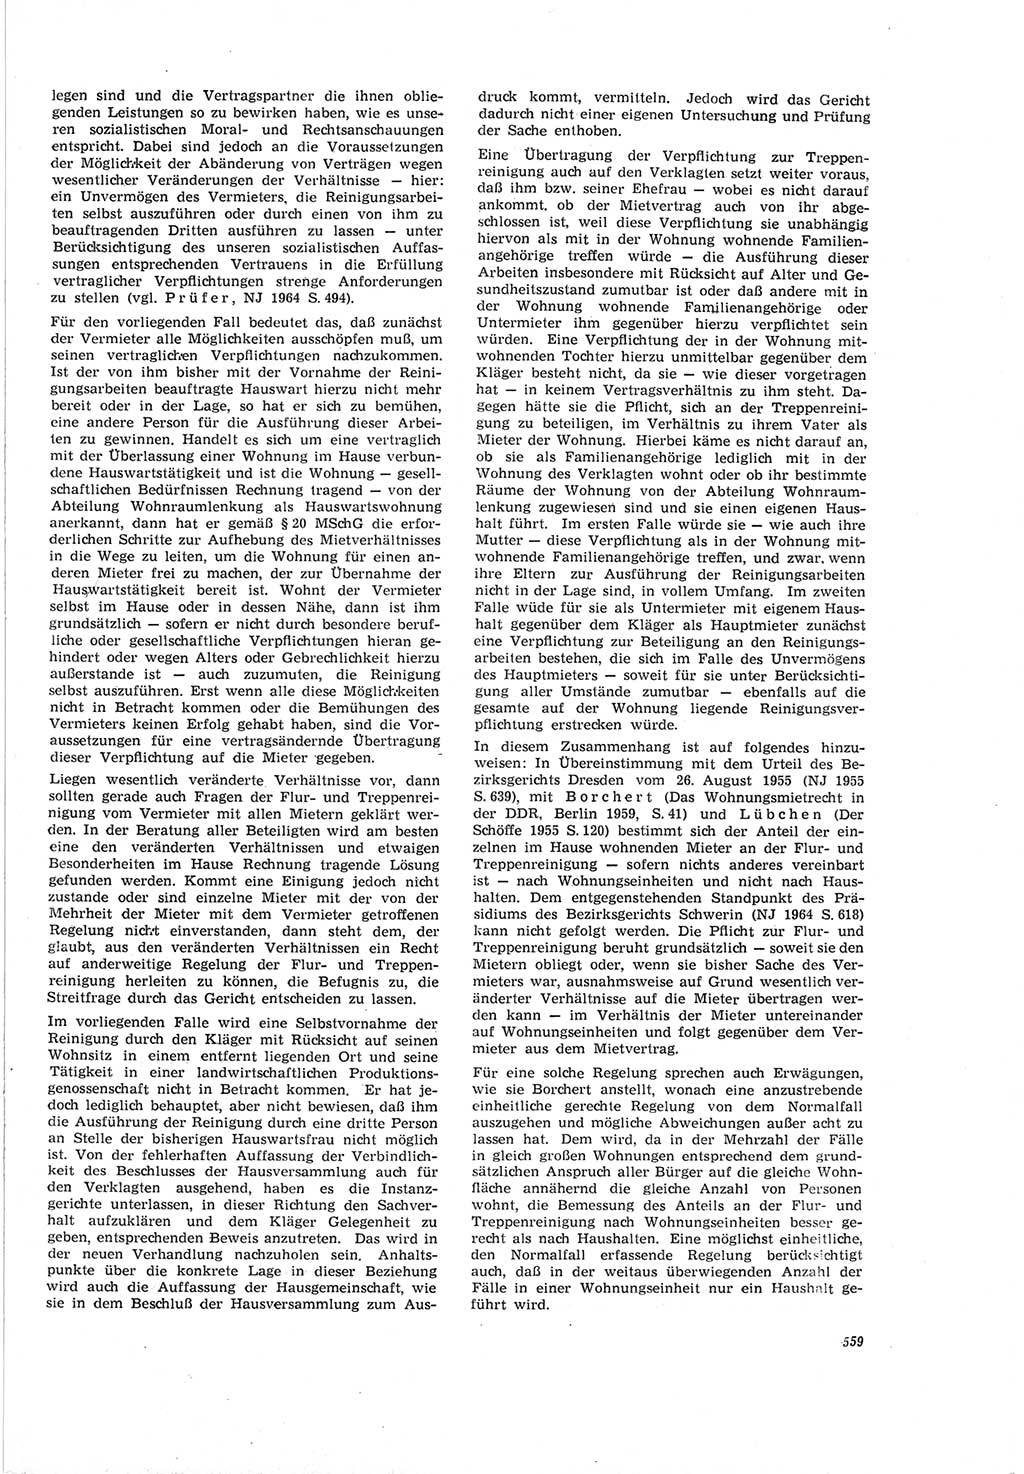 Neue Justiz (NJ), Zeitschrift für Recht und Rechtswissenschaft [Deutsche Demokratische Republik (DDR)], 19. Jahrgang 1965, Seite 559 (NJ DDR 1965, S. 559)